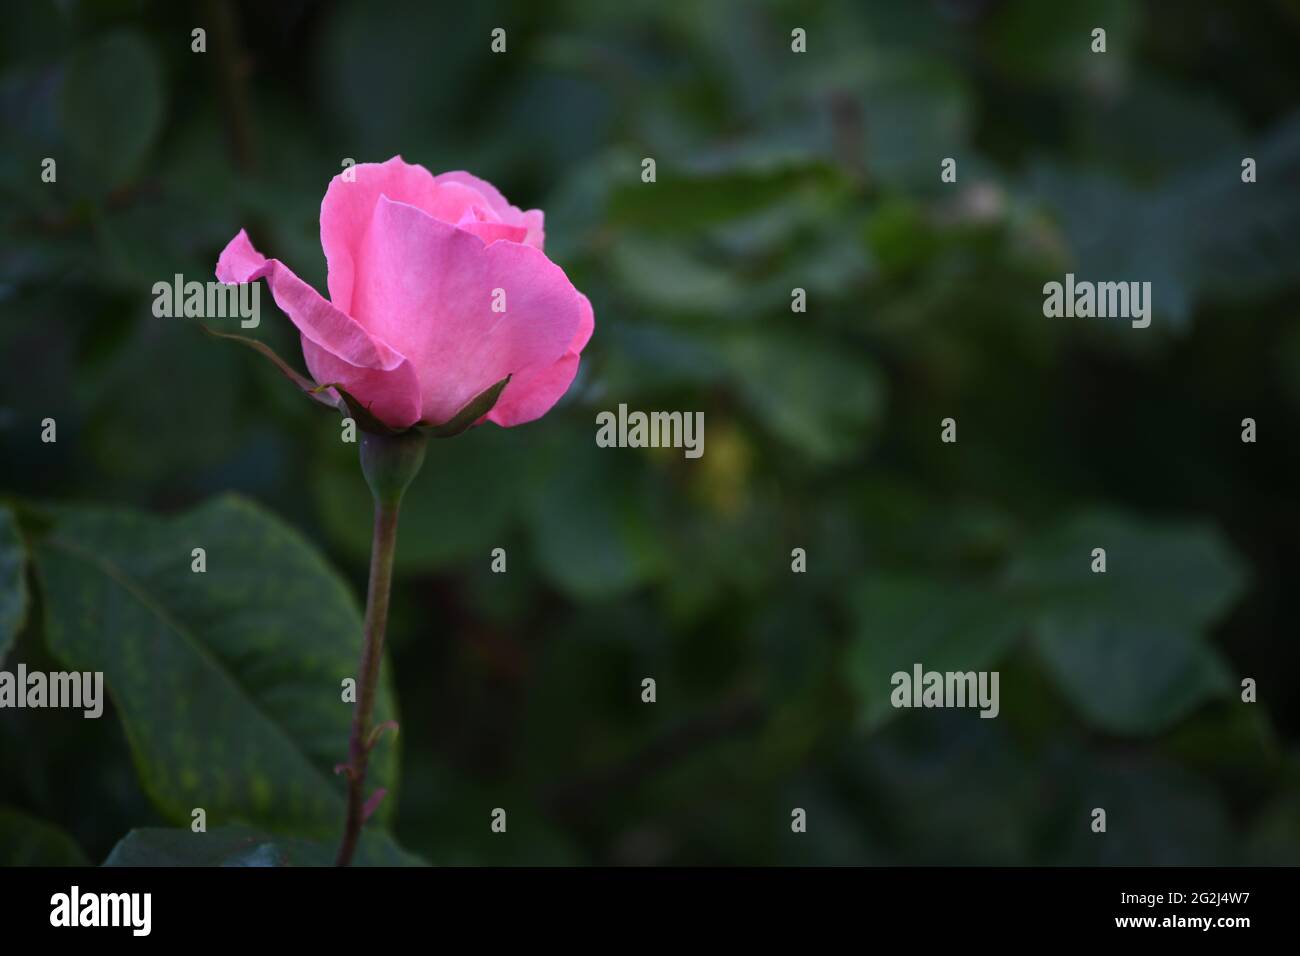 Heilpflanze Rose - rosa - mit herrlichem rosafarbener Rosenblüte als Zeichen der Liebe und Freundschaft Stockfoto